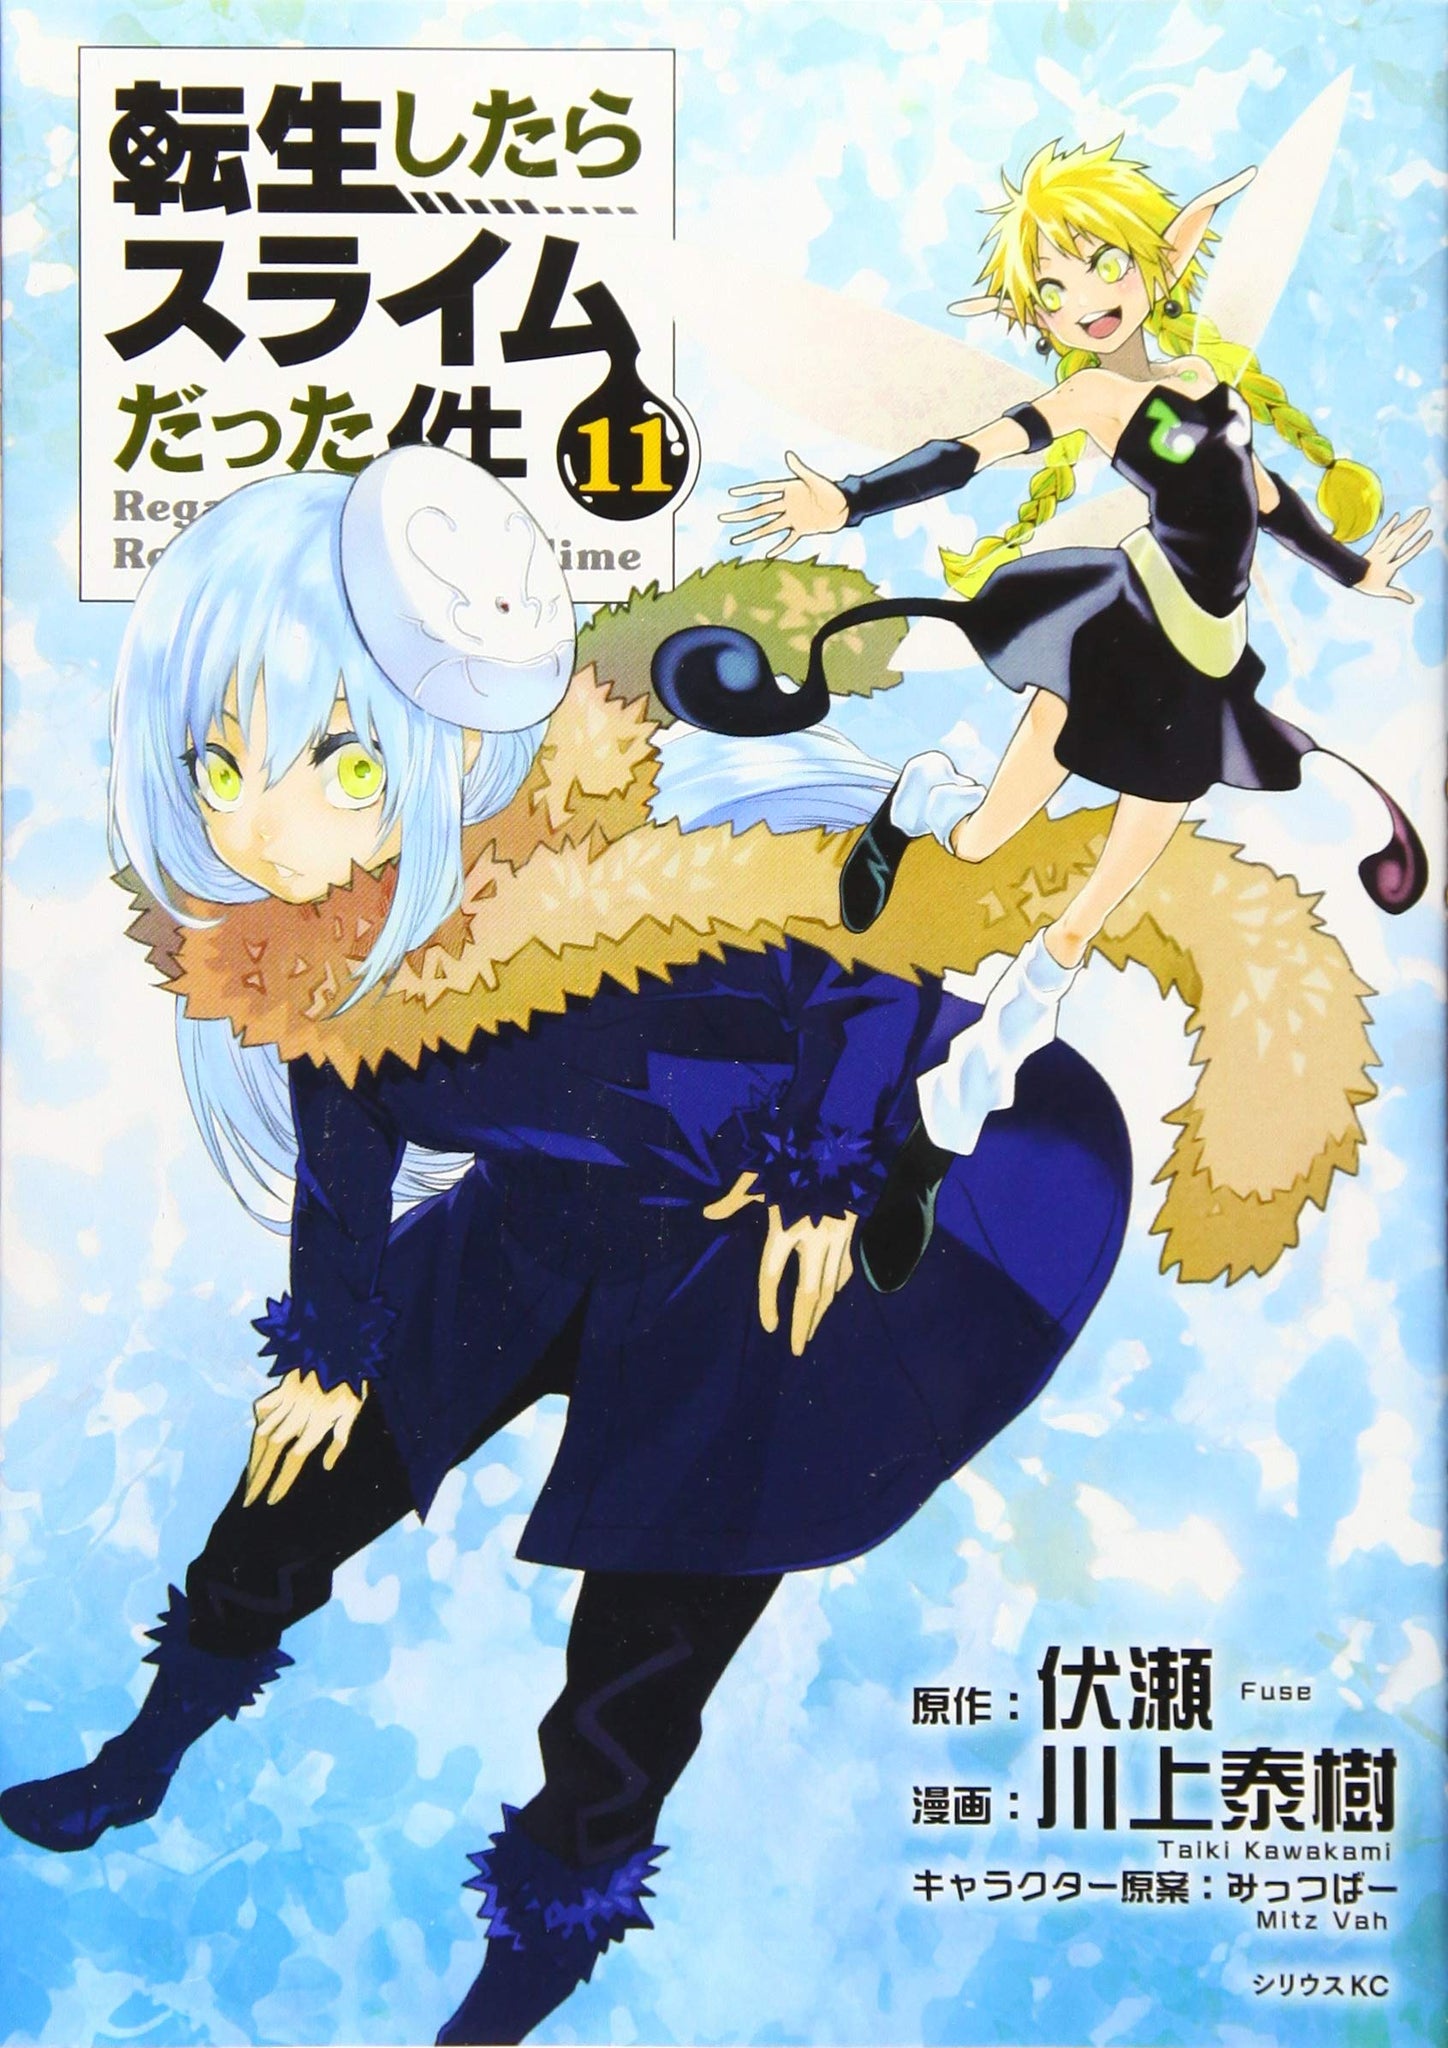 Tensei shitara slime datta ken  Anime art, Character design